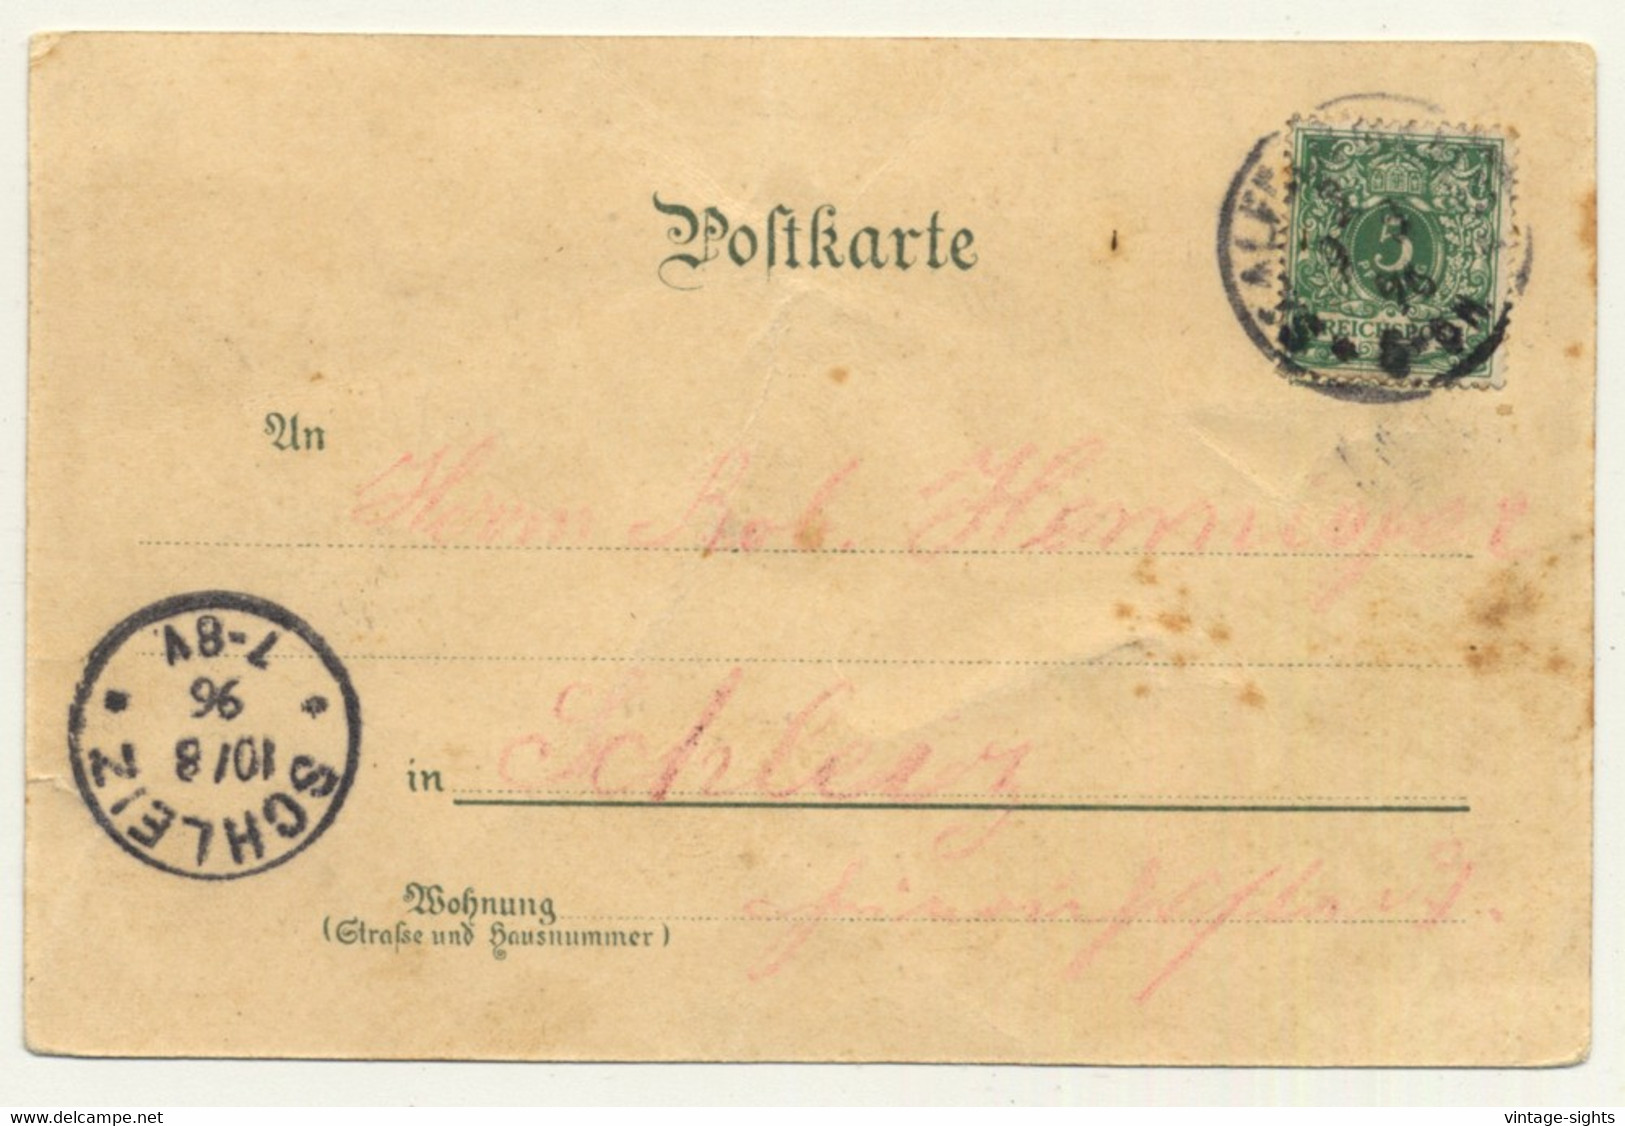 Gruss Vom Schützenfest - Rifle Festival / Burger Bräu (Vintage Postcard Litho 1898) - Waffenschiessen